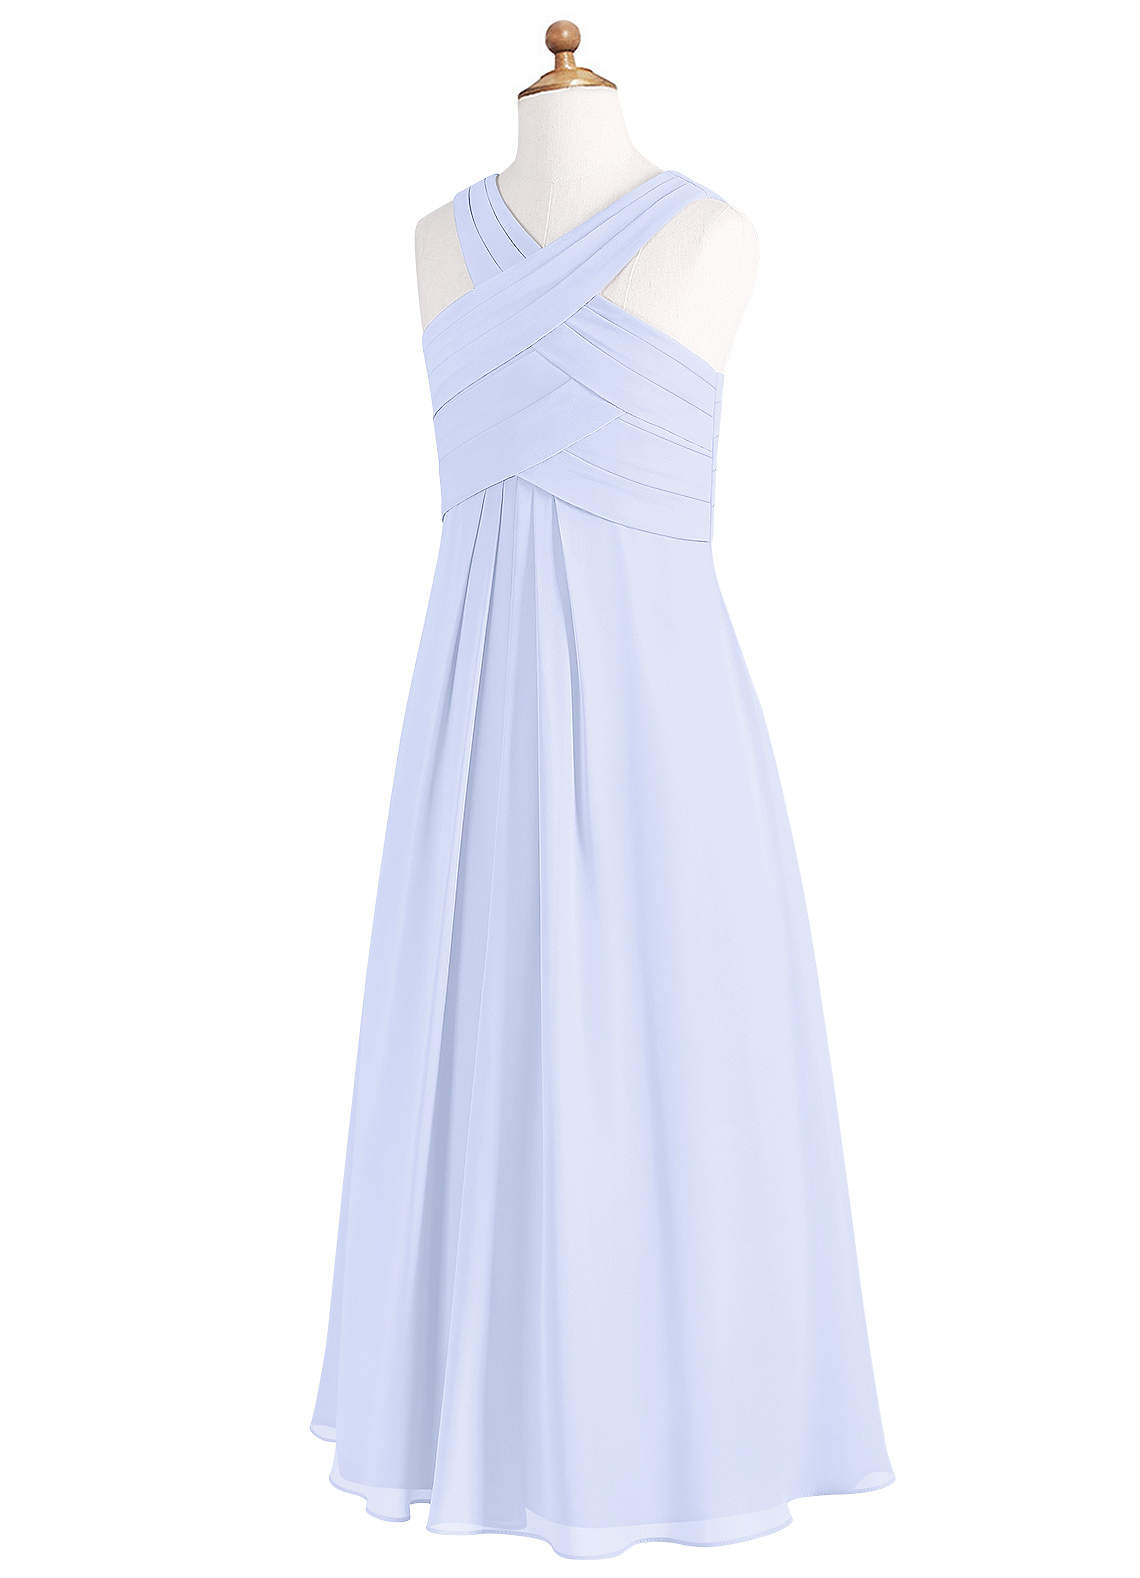 Azazie Kaleigh A-Line Pleated Chiffon Floor-Length Junior Bridesmaid Dress image1